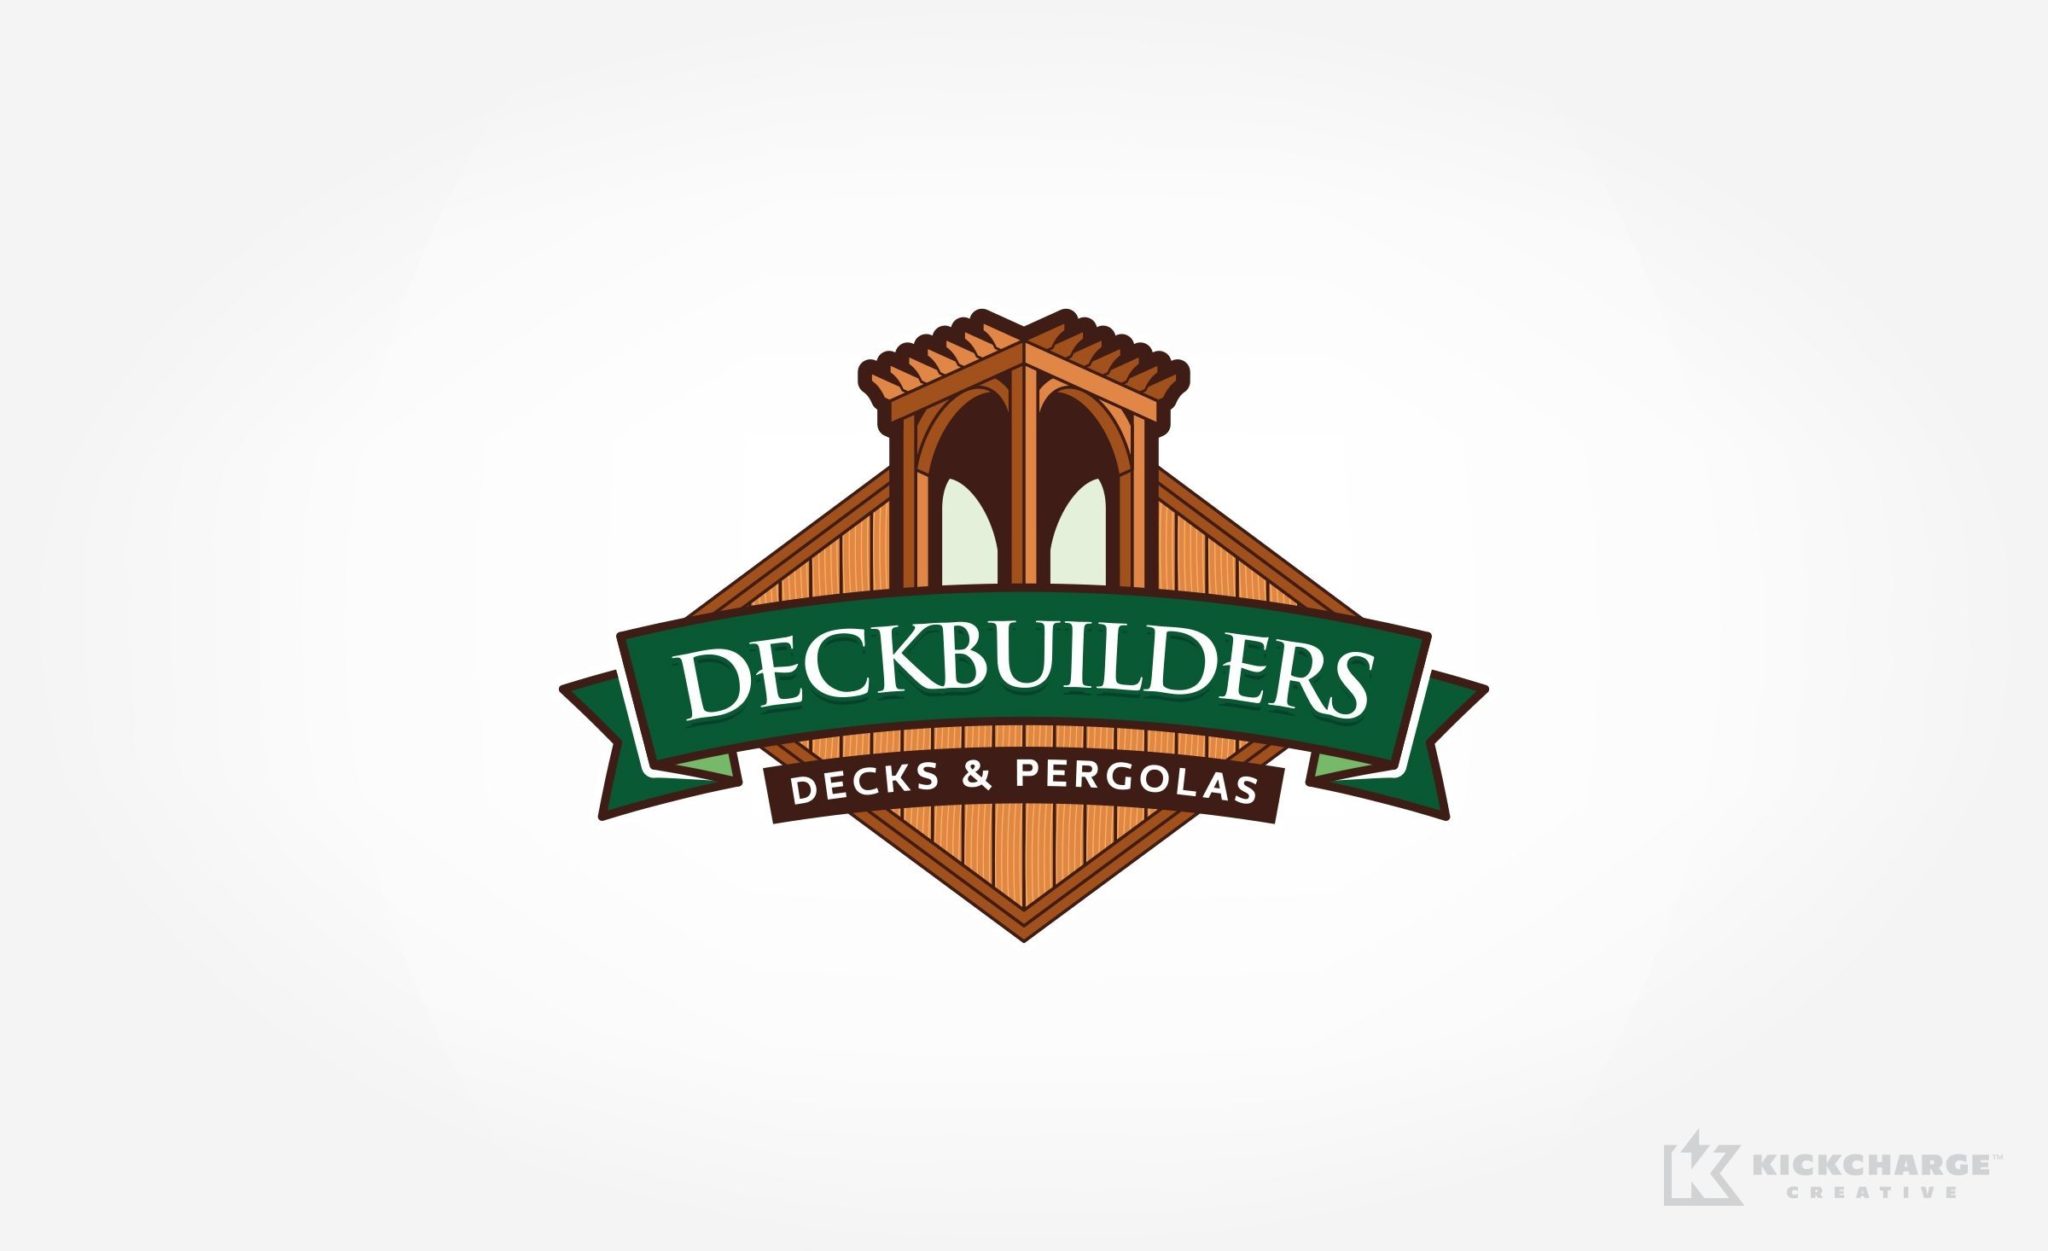 Deckbuilders